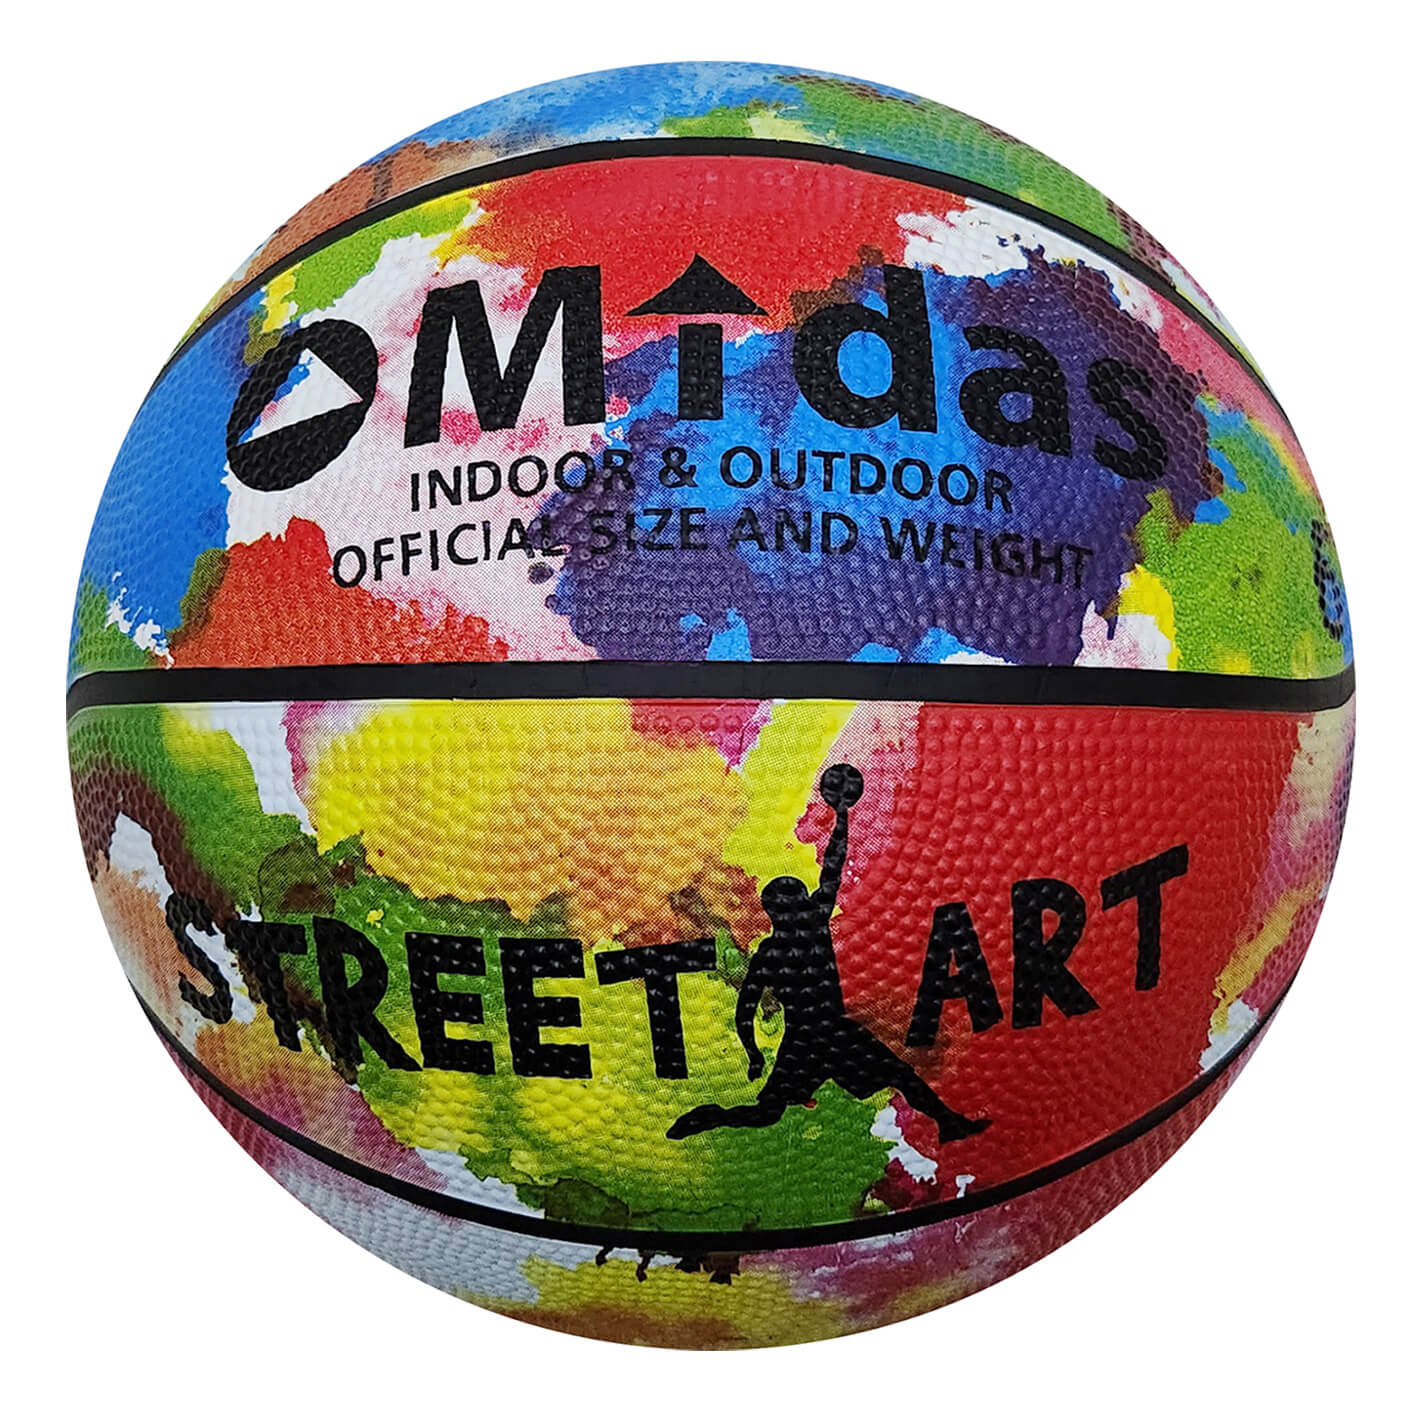 Midas Street Art basketboll